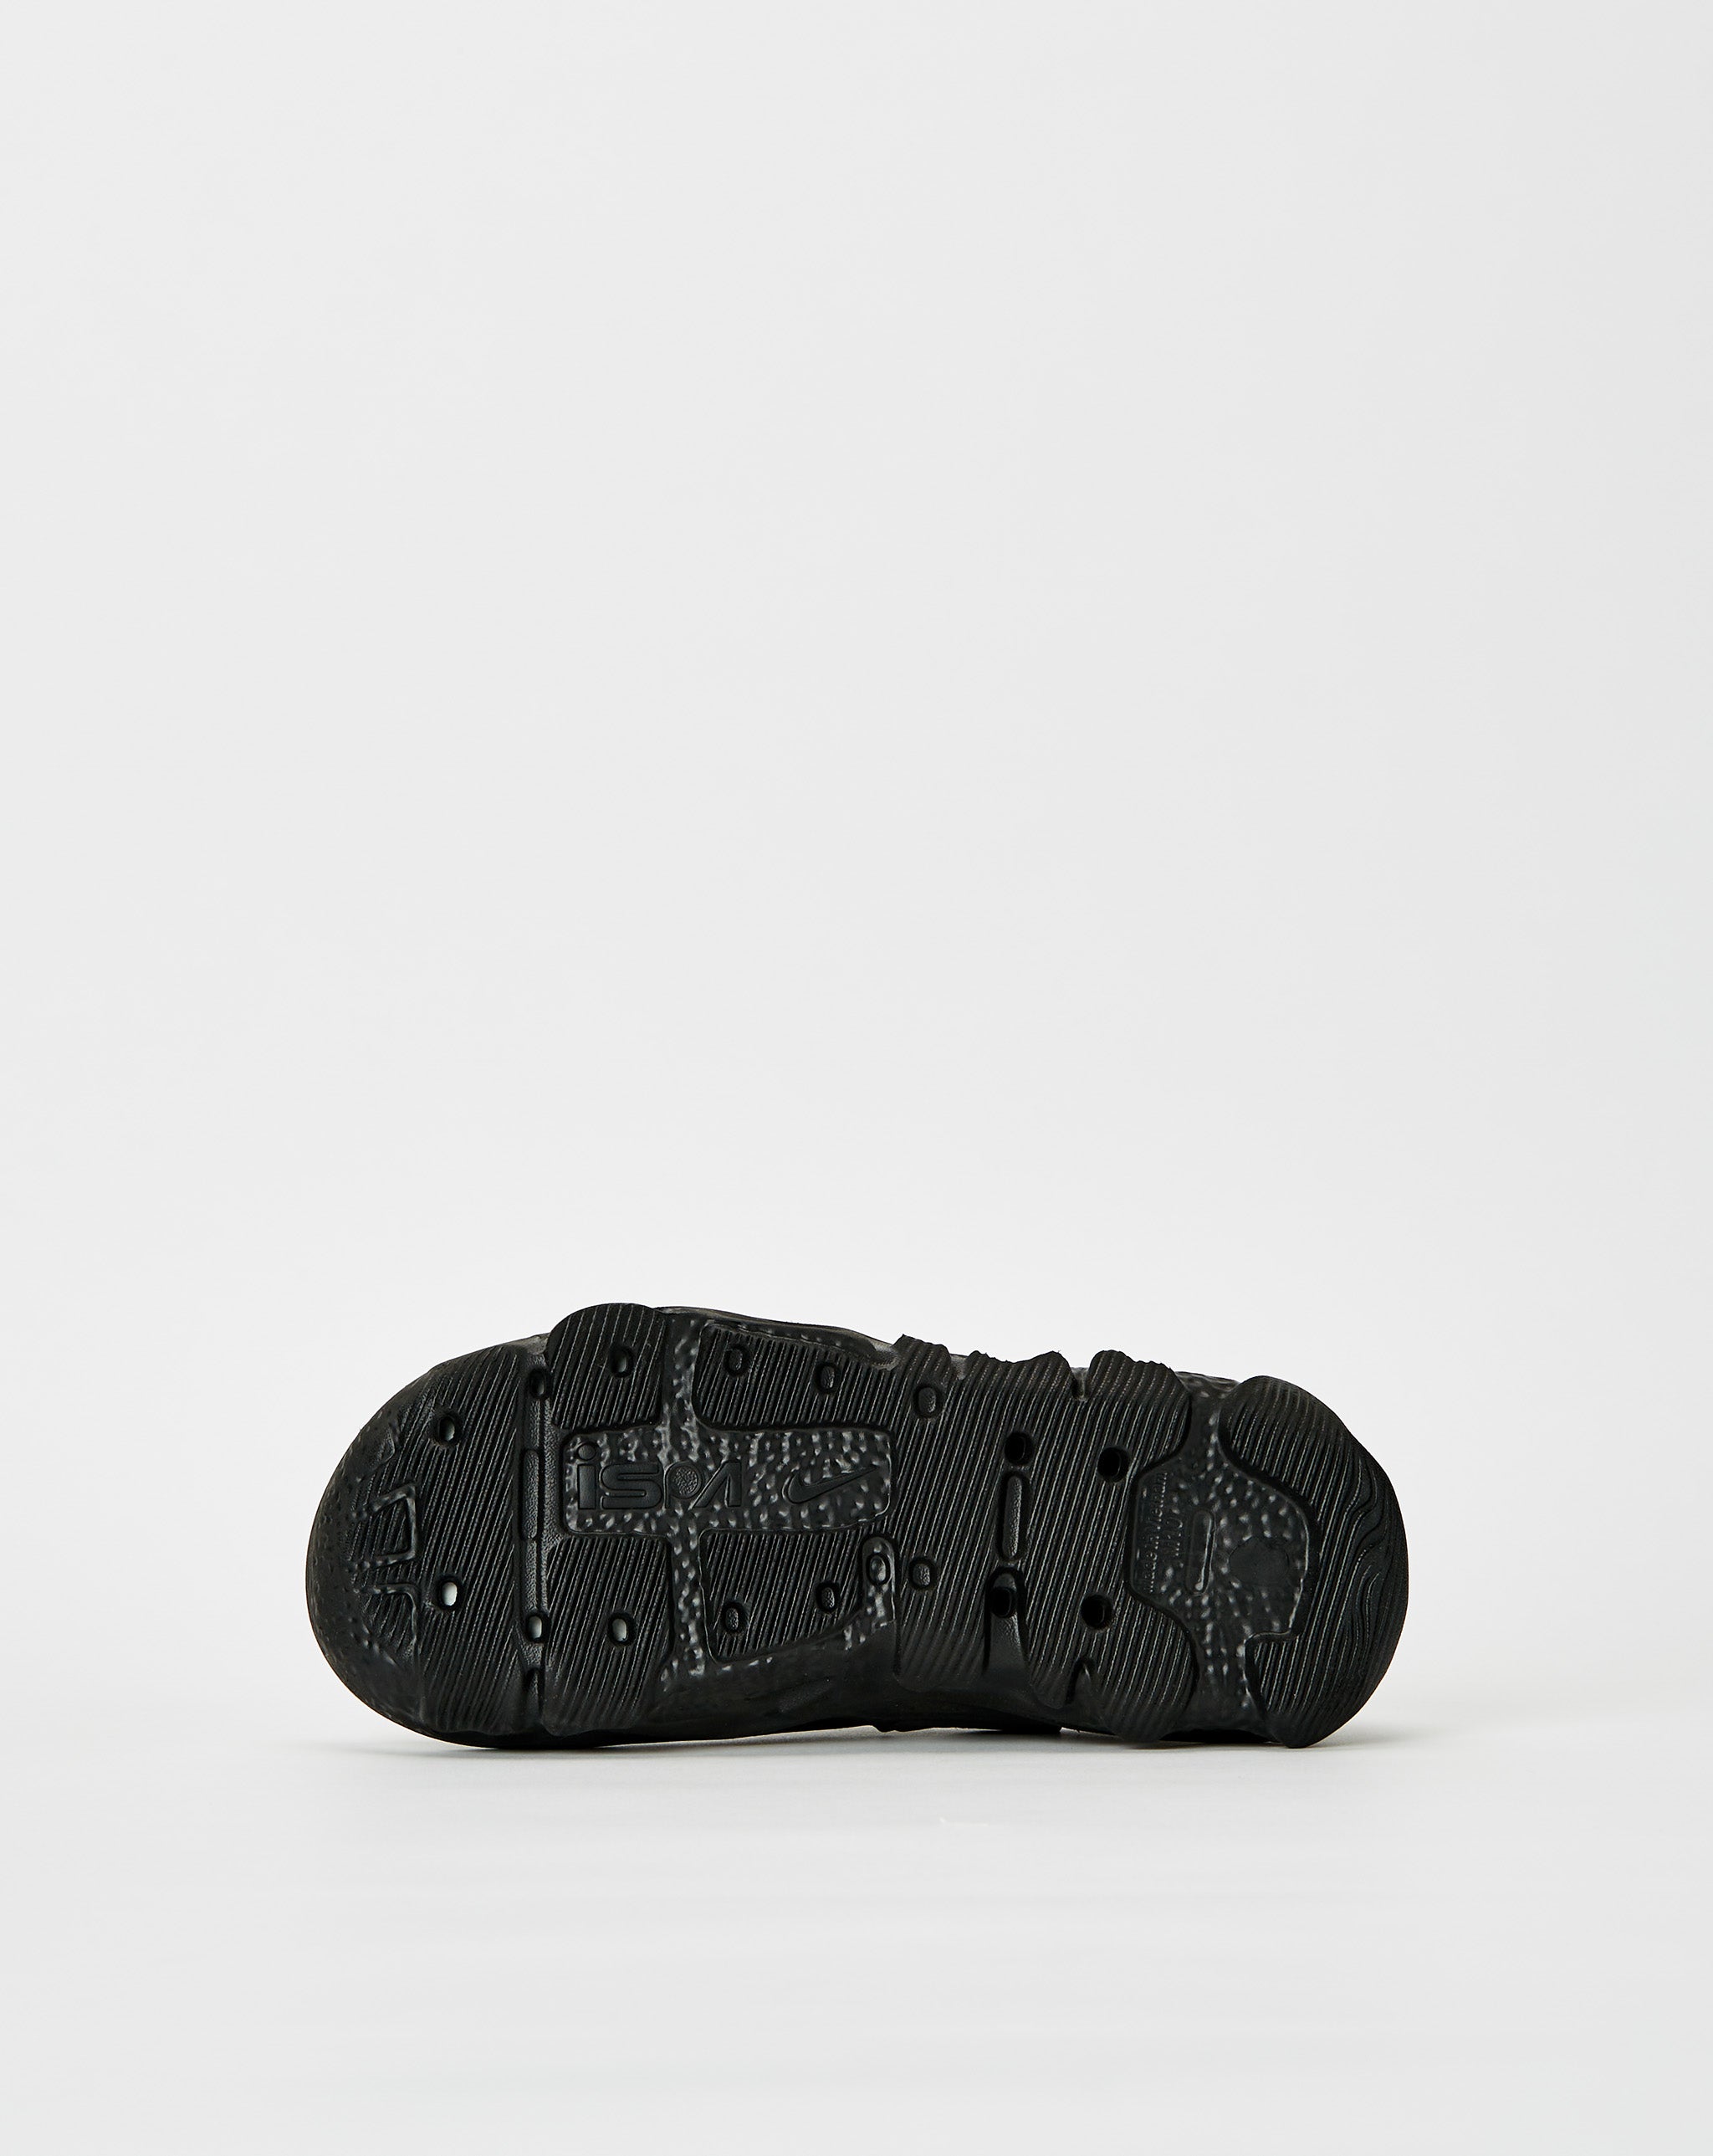 Nike ISPA Universal  - Cheap Cerbe Jordan outlet